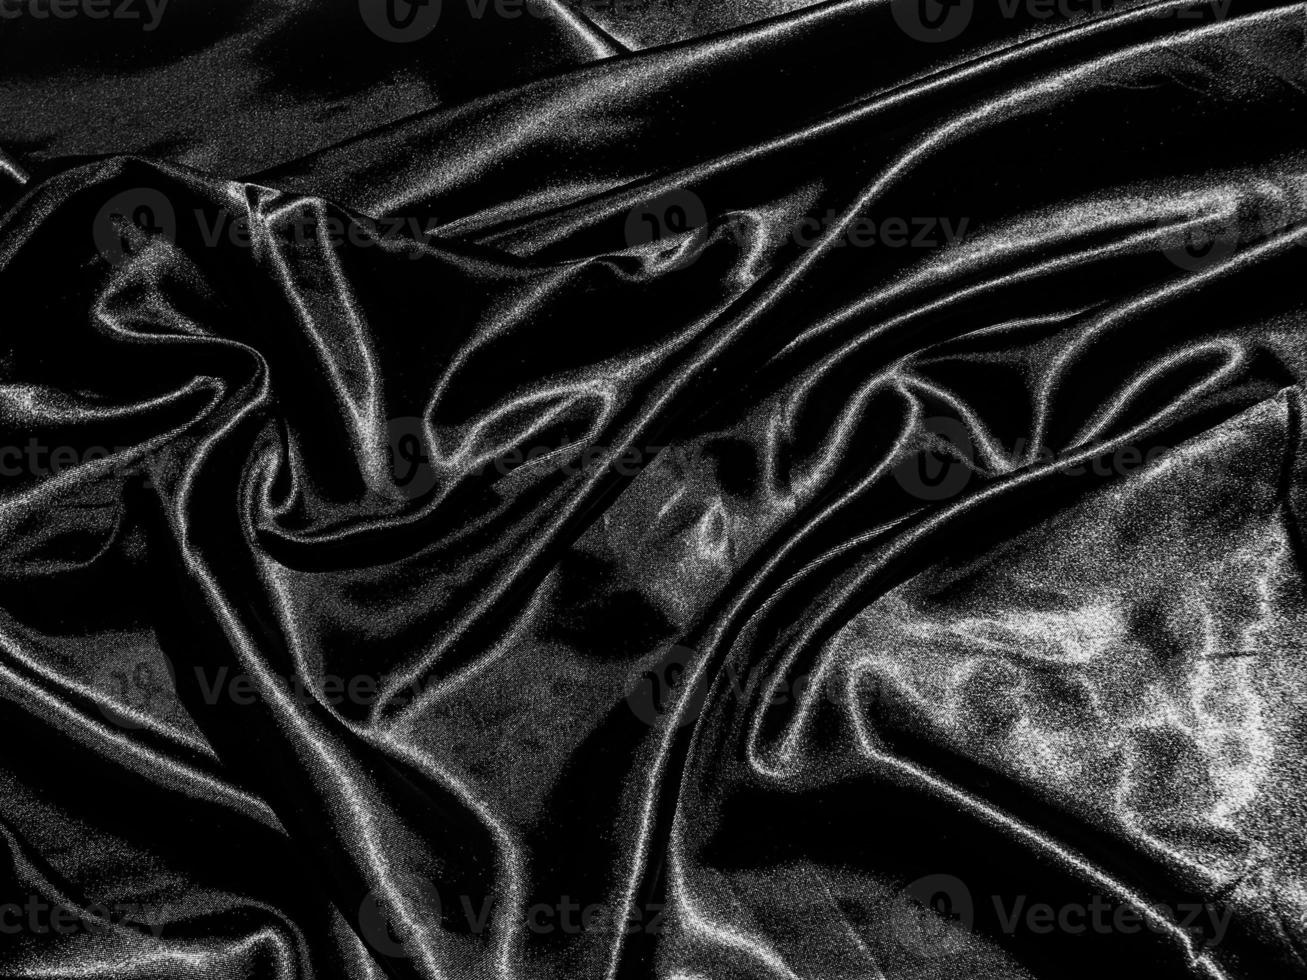 soie noire de luxe ou fond de texture satinée avec vague liquide ou plis ondulés. conception de papier peint photo